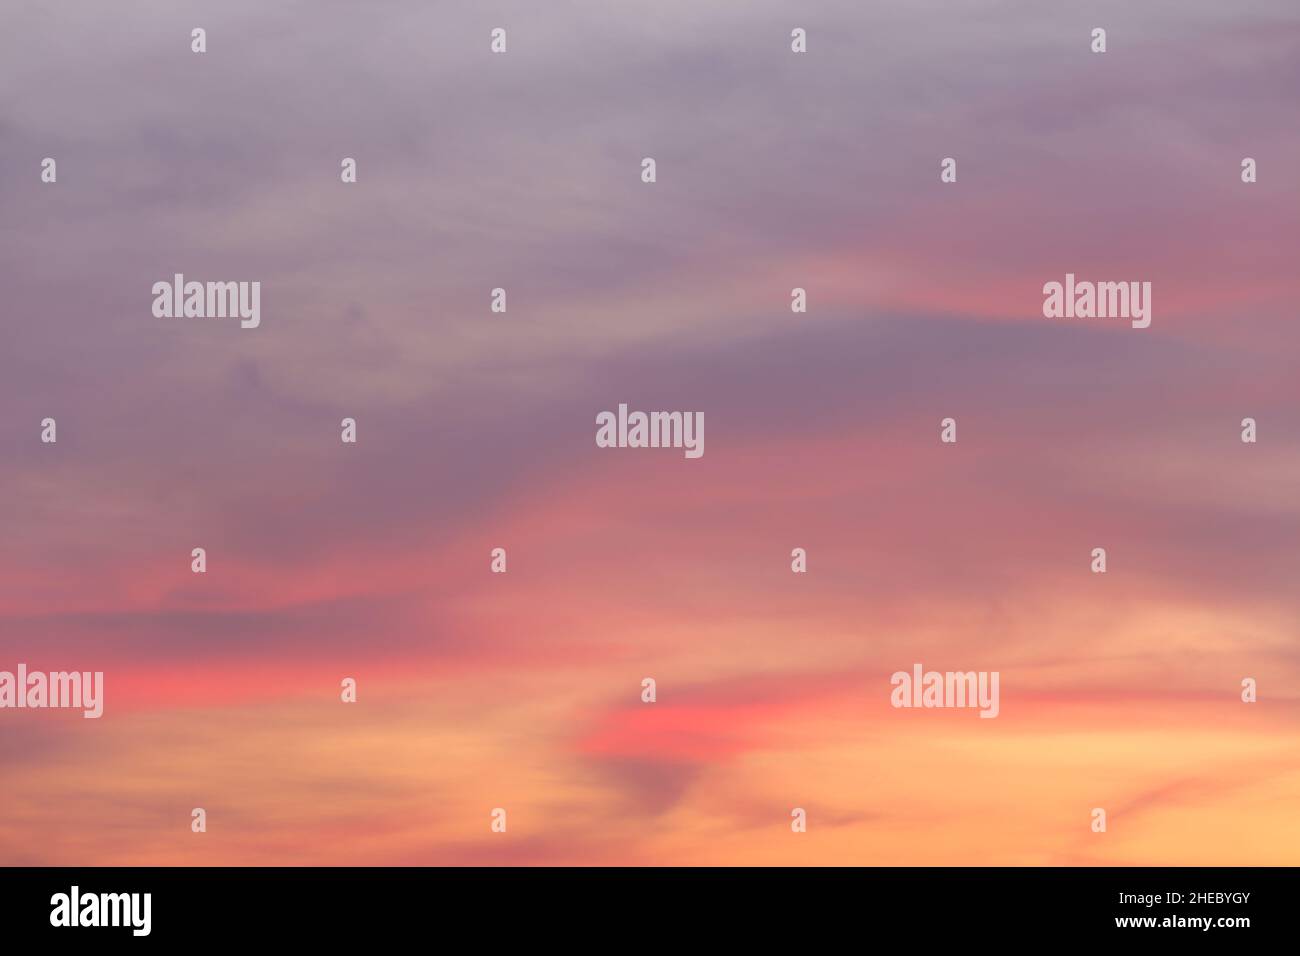 Himmel und Wolken nach Sonnenuntergang, Dämmerung Himmel Ansicht für natürliche Landschaft Design. Stockfoto